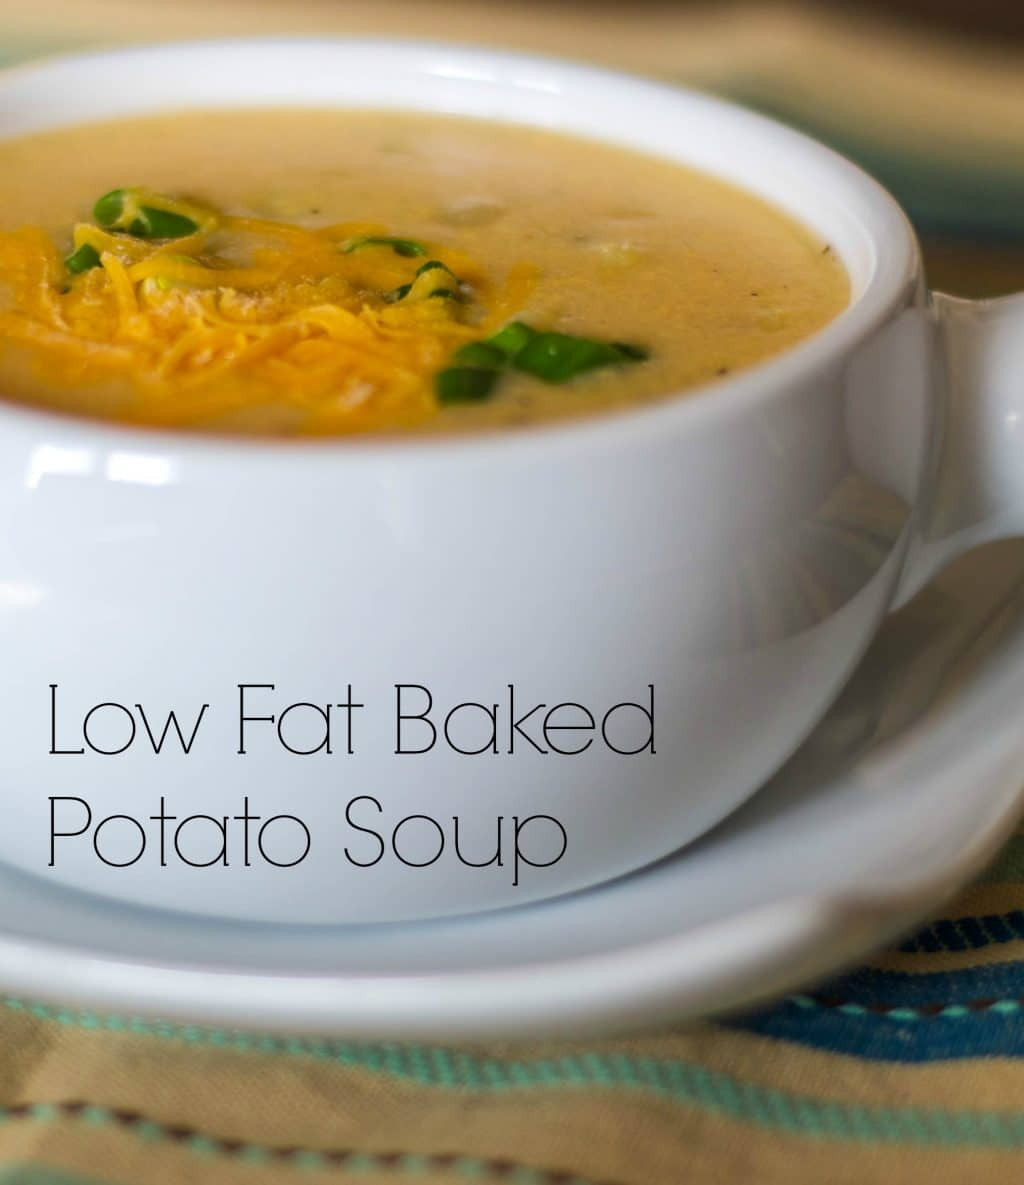 Low Calorie Baked Potato Soup
 Baked Potato Soup Low Fat Carrie’s Experimental Kitchen